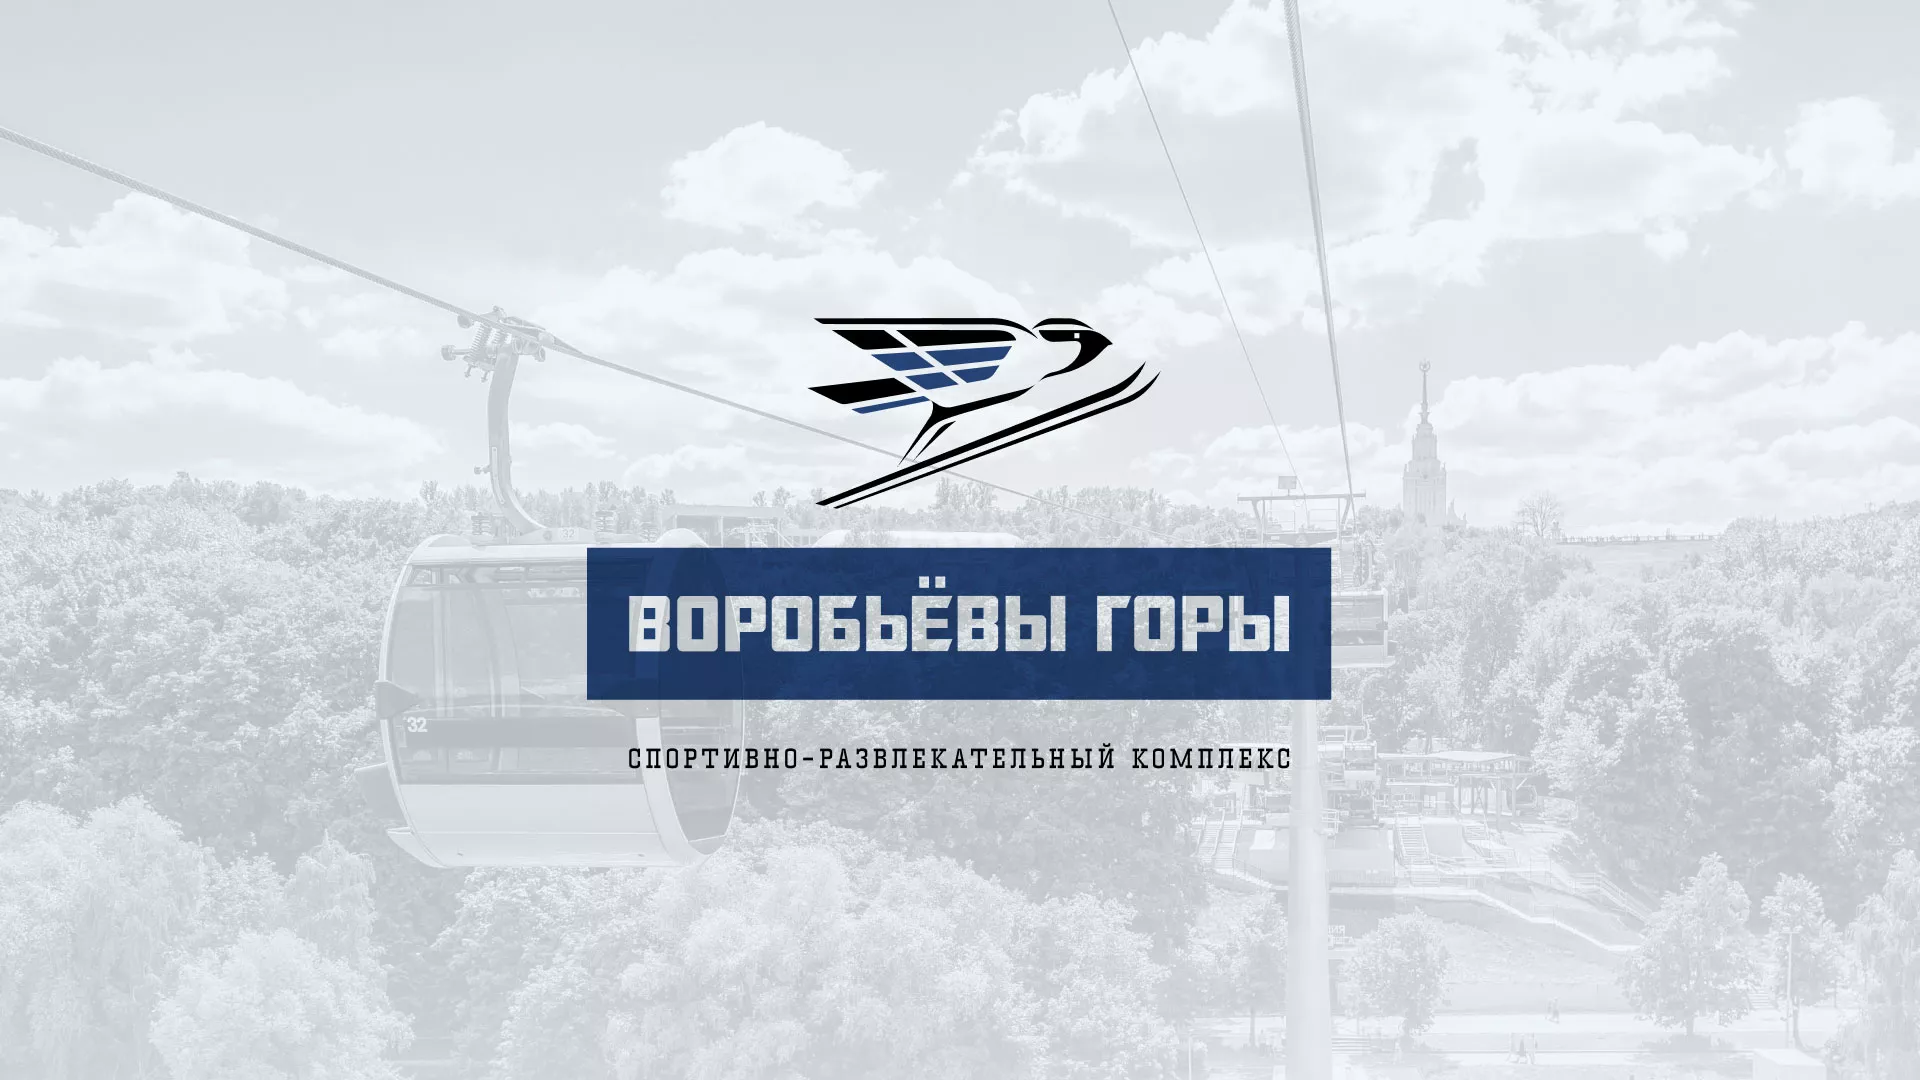 Разработка сайта в Батайске для спортивно-развлекательного комплекса «Воробьёвы горы»